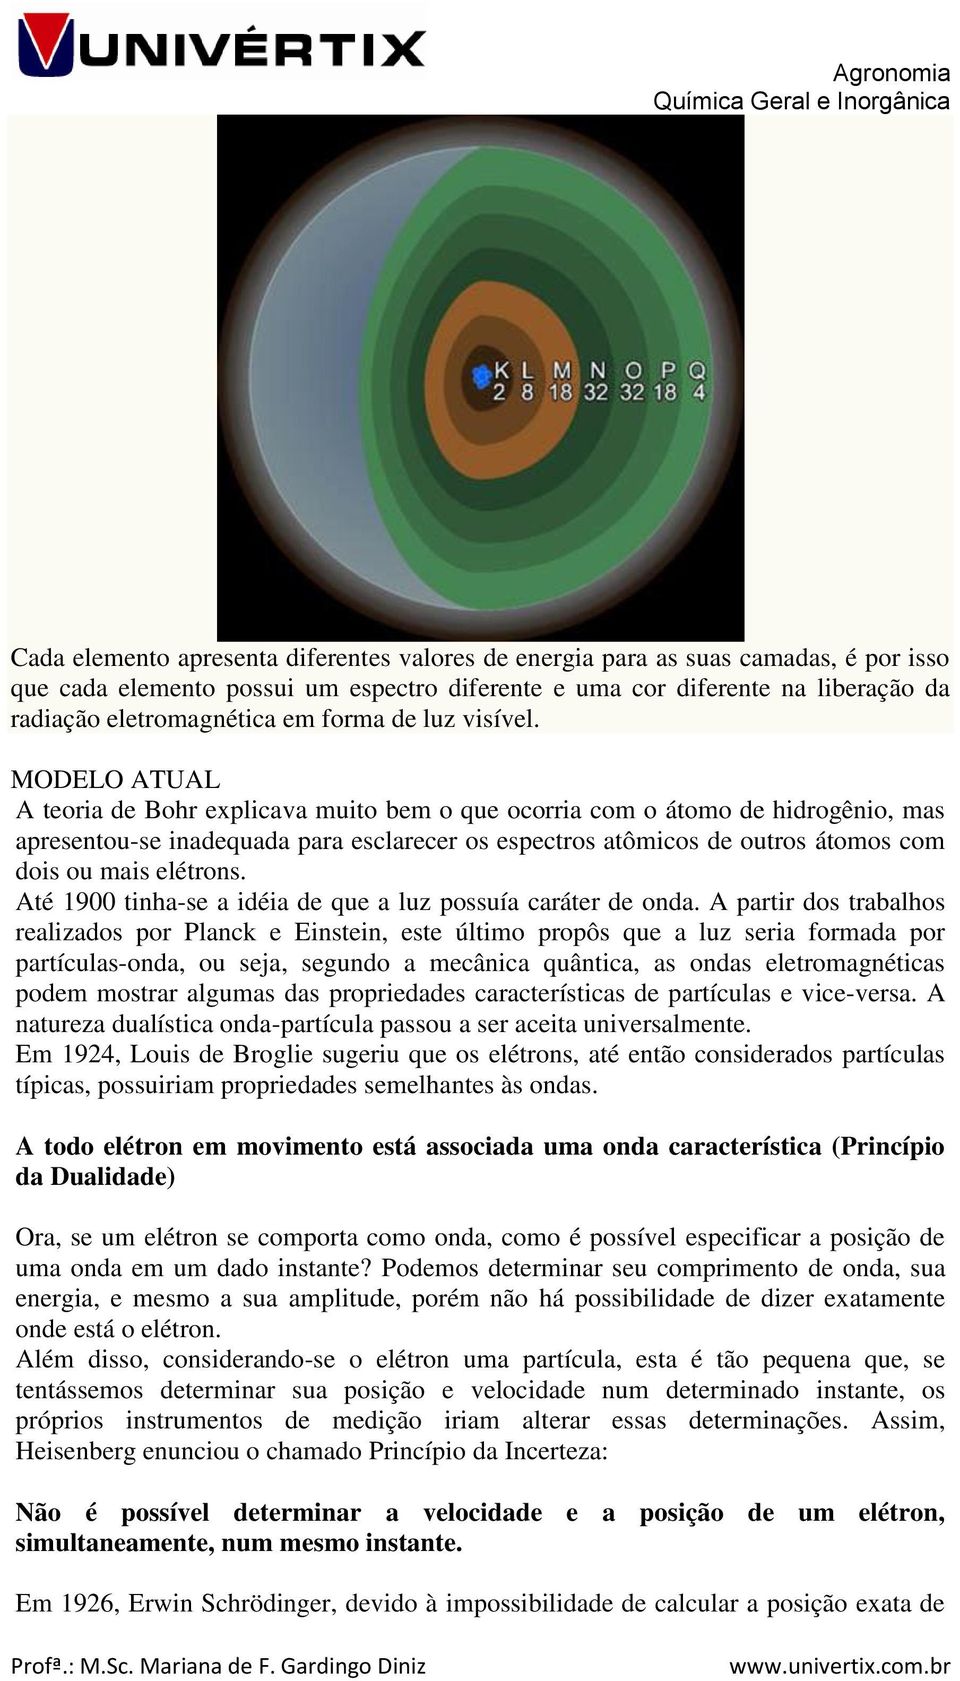 MODELO ATUAL A teoria de Bohr explicava muito bem o que ocorria com o átomo de hidrogênio, mas apresentou-se inadequada para esclarecer os espectros atômicos de outros átomos com dois ou mais